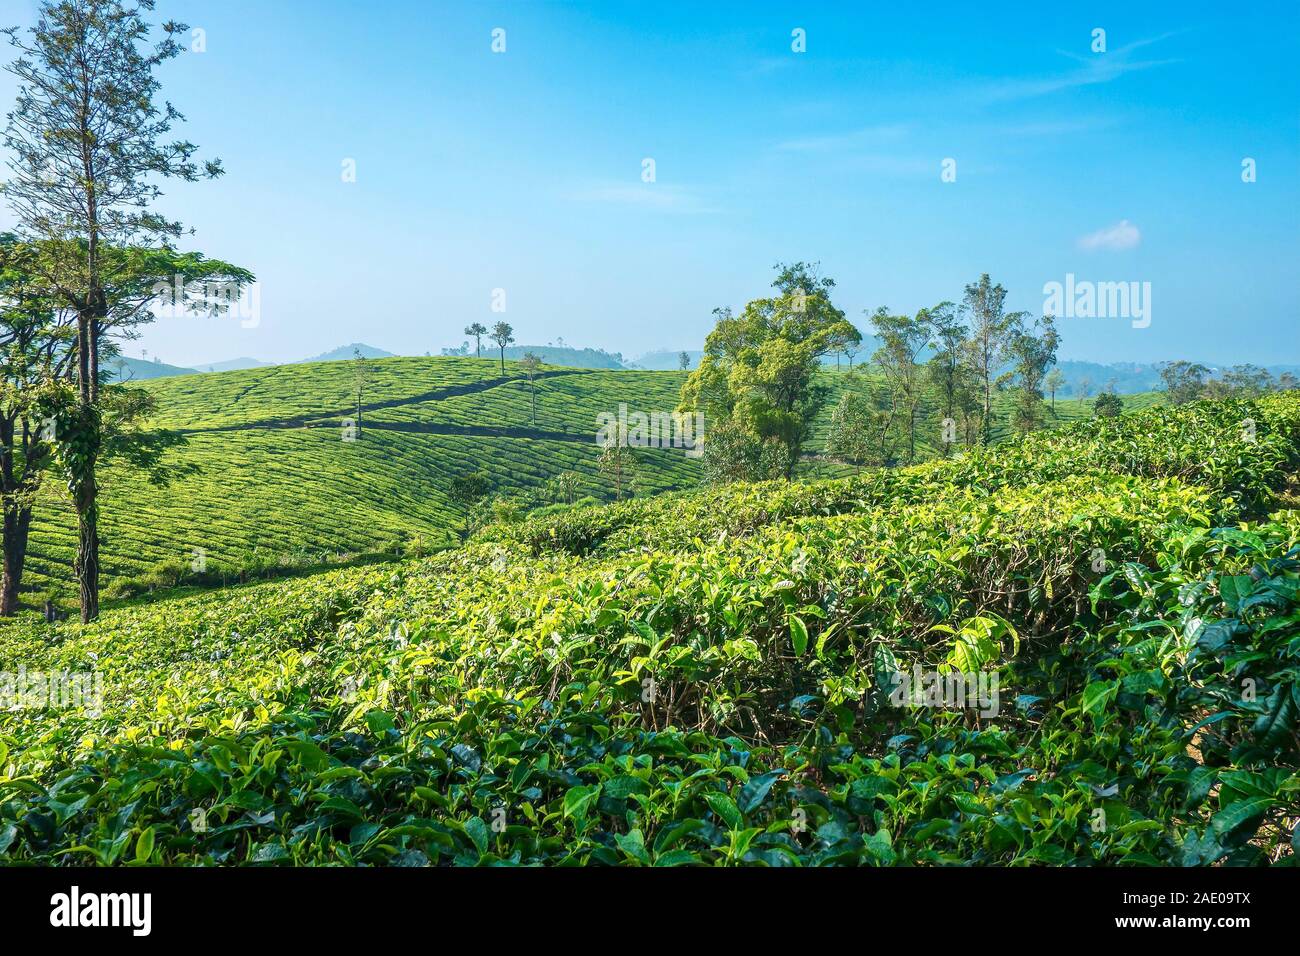 La produzione del tè è una grande industria in India. Si tratta di una piantagione di tè situato in alta quota regione di Munnar nello stato del Kerala, India del sud. Foto Stock